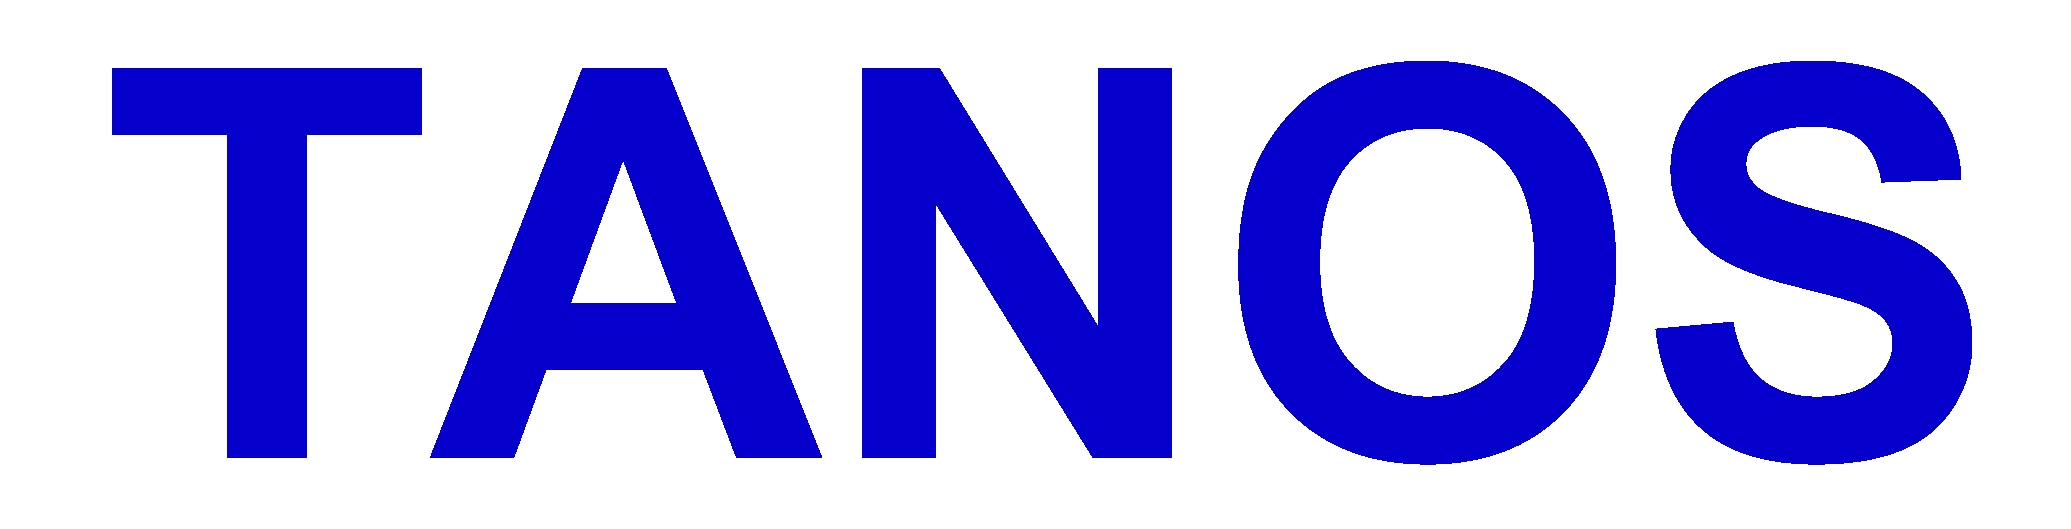 Hersteller Logo